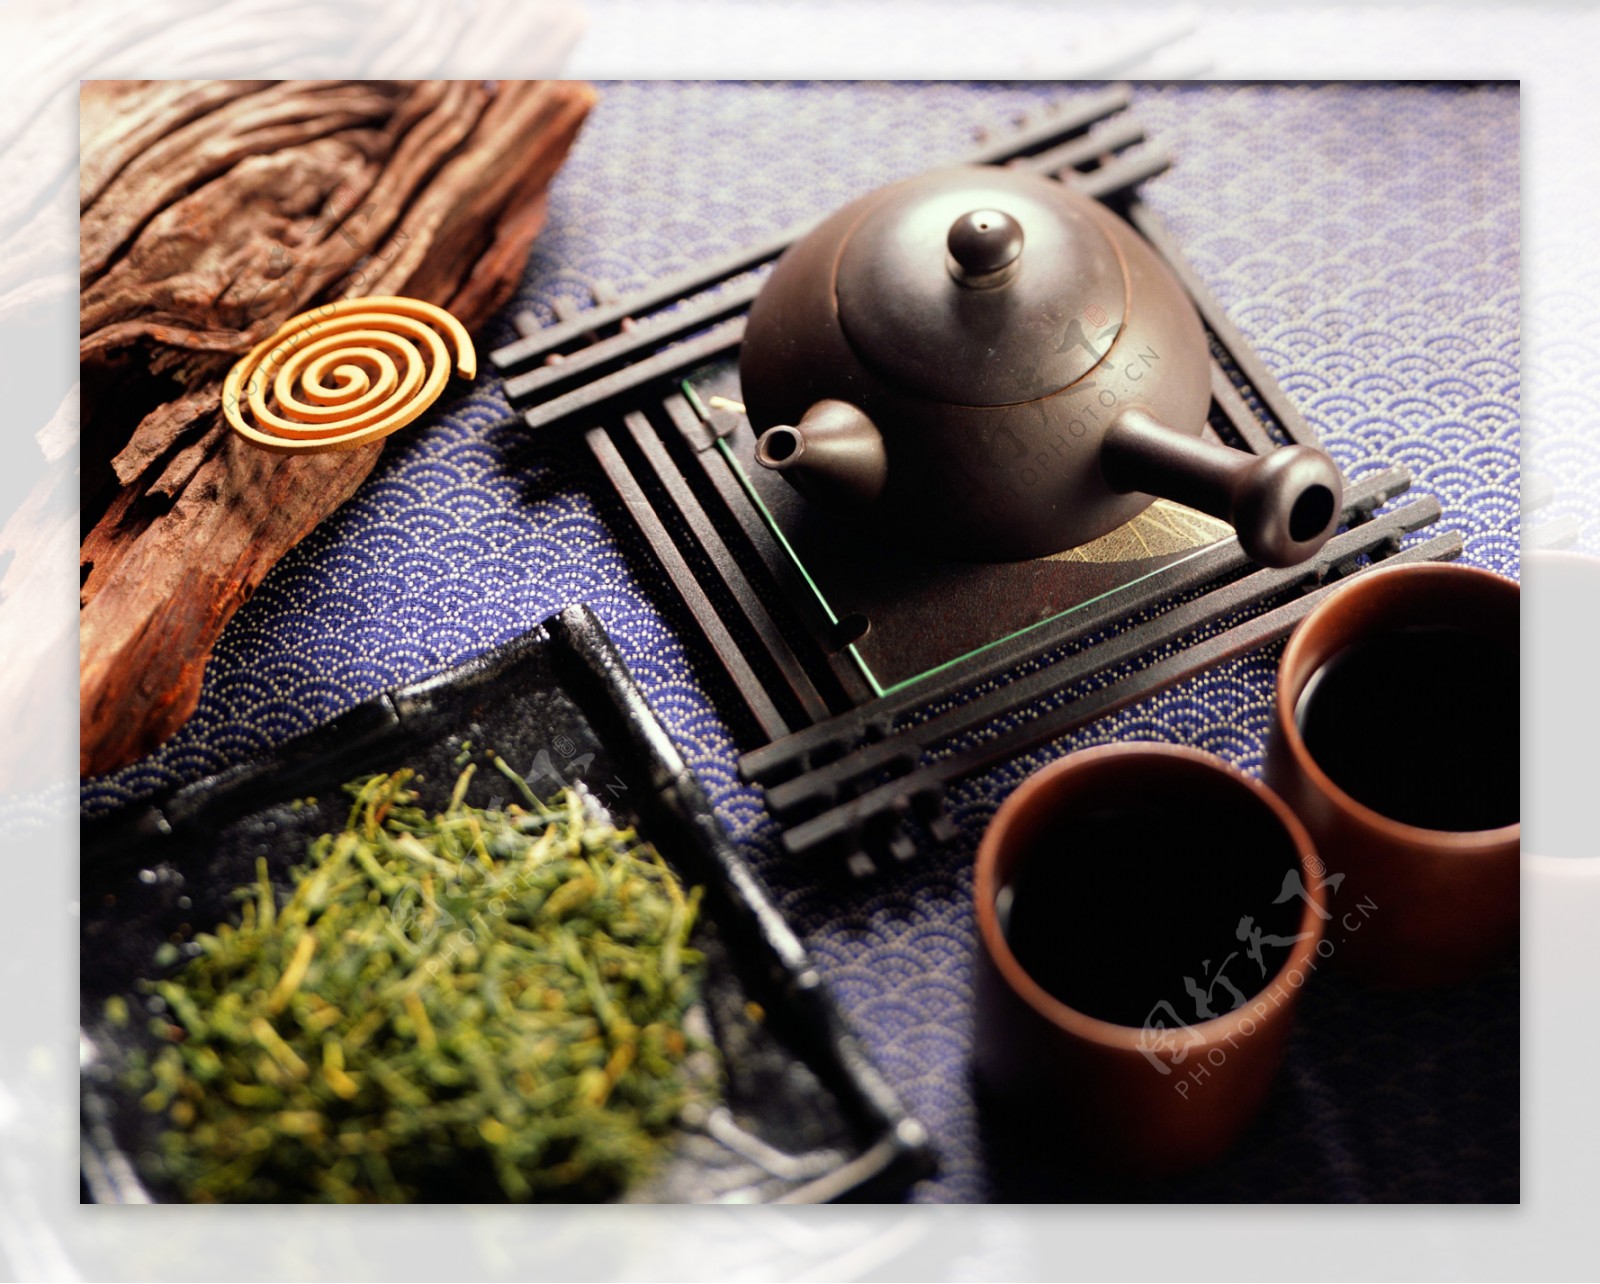 茶茶具茶壶